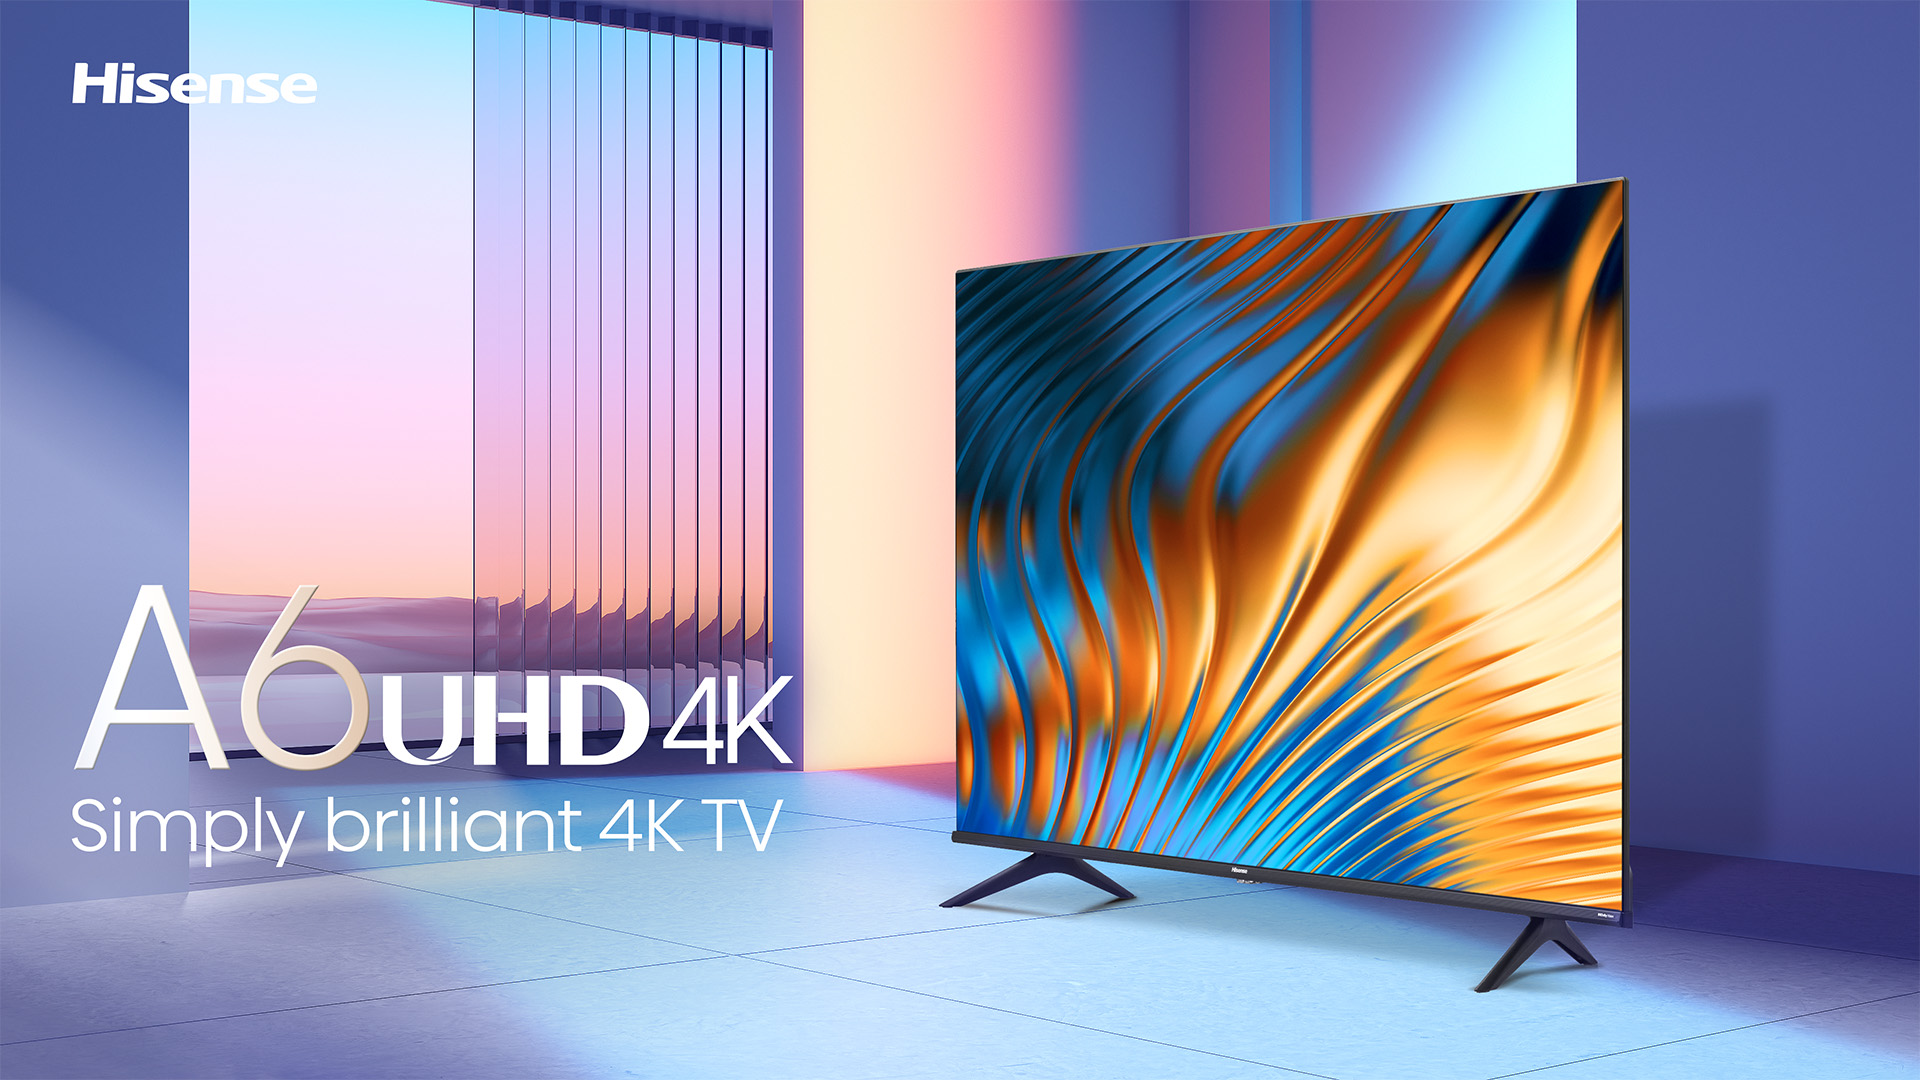 Hisense 43″ A6H UHD 4K TV